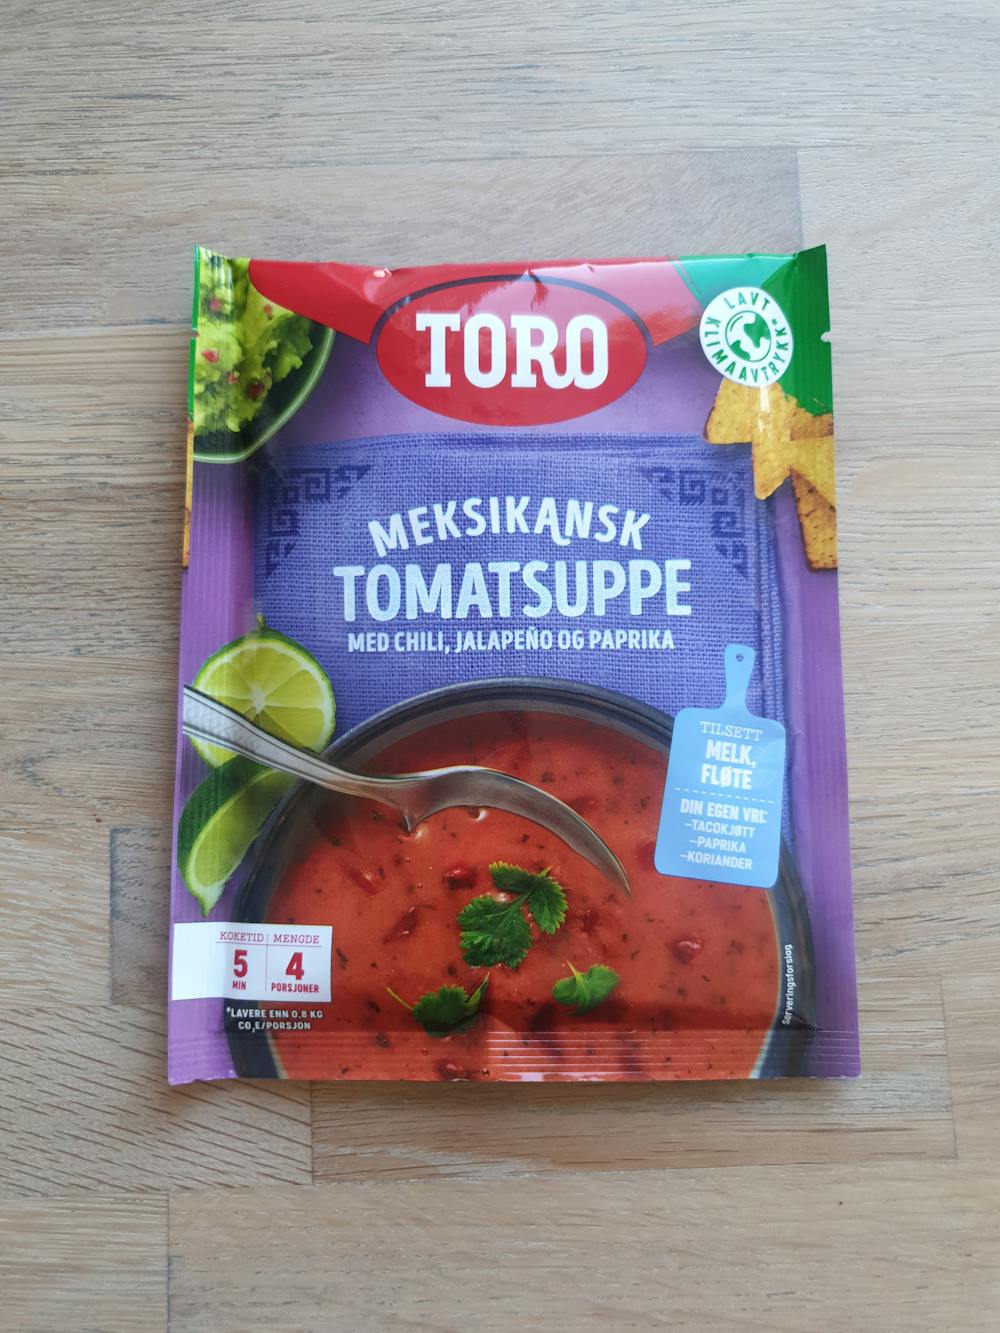 Meksikansk tomatsuppe, Toro